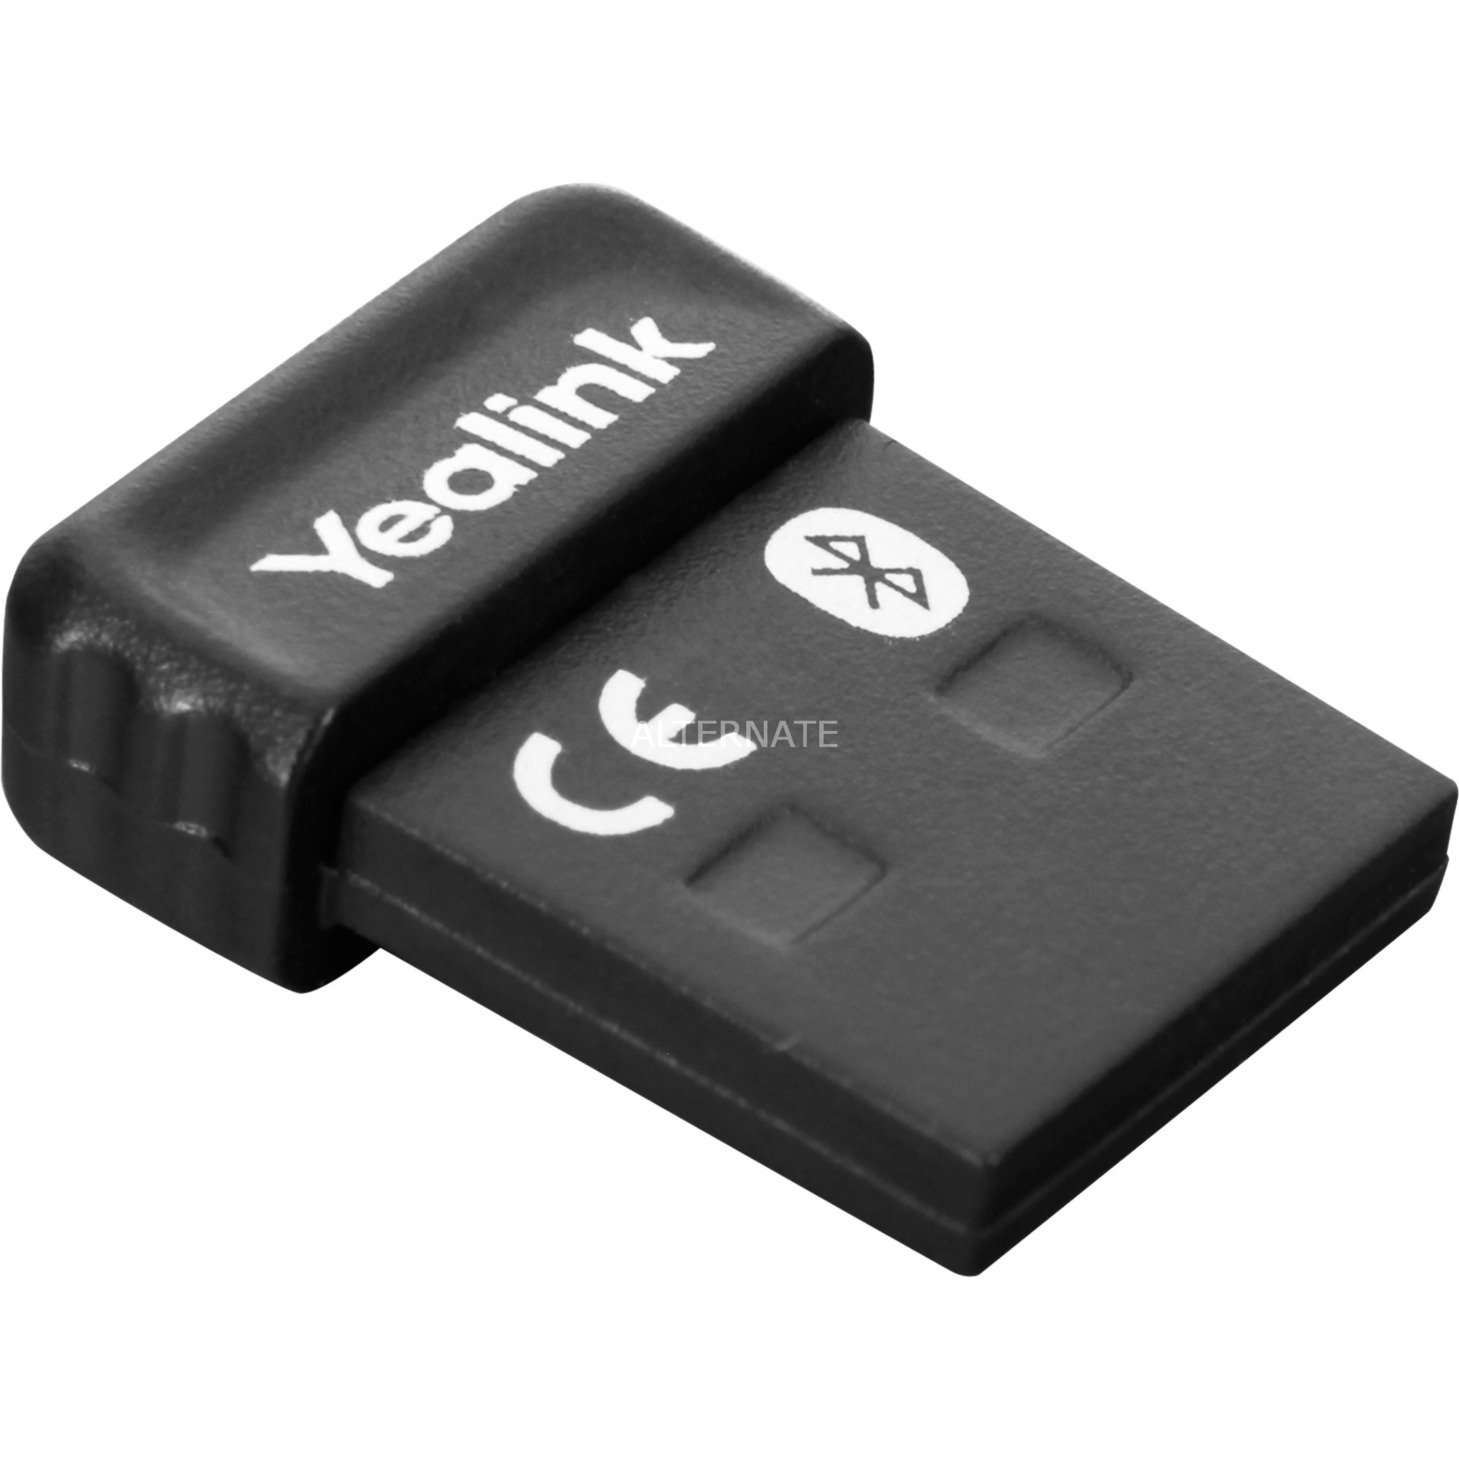 Image of Alternate - Bluetooth USB Dongle BT41, Bluetooth-Adapter online einkaufen bei Alternate